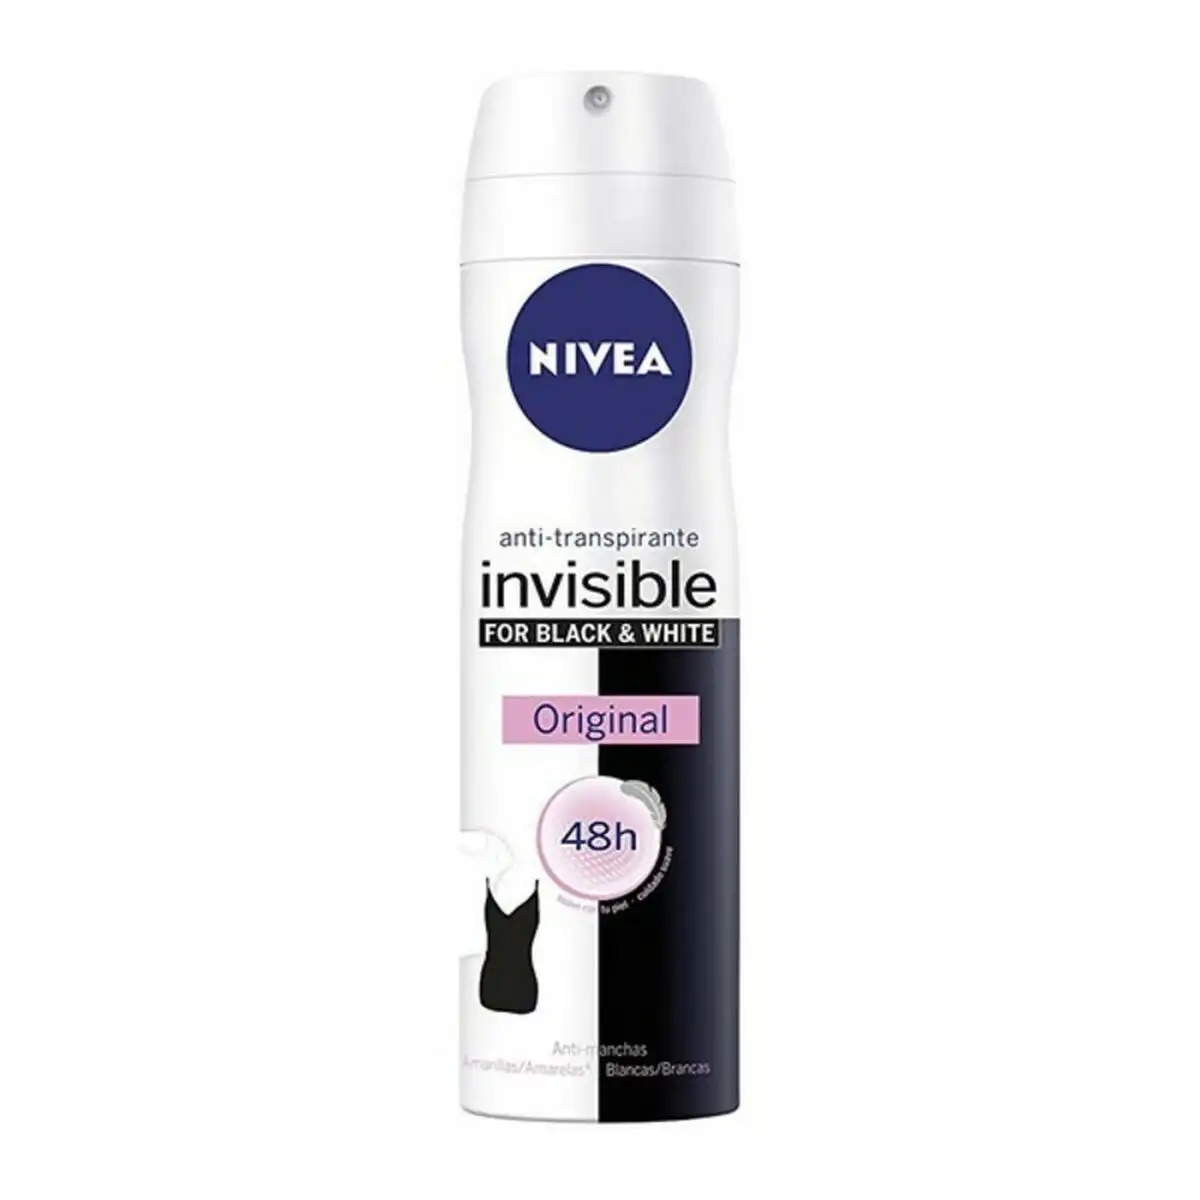 Spray deodorant black white invisible nivea 200 ml _5766. Bienvenue sur DIAYTAR SENEGAL - Où Choisir Rime avec Qualité. Explorez notre gamme diversifiée et découvrez des articles conçus pour répondre à vos attentes élevées.